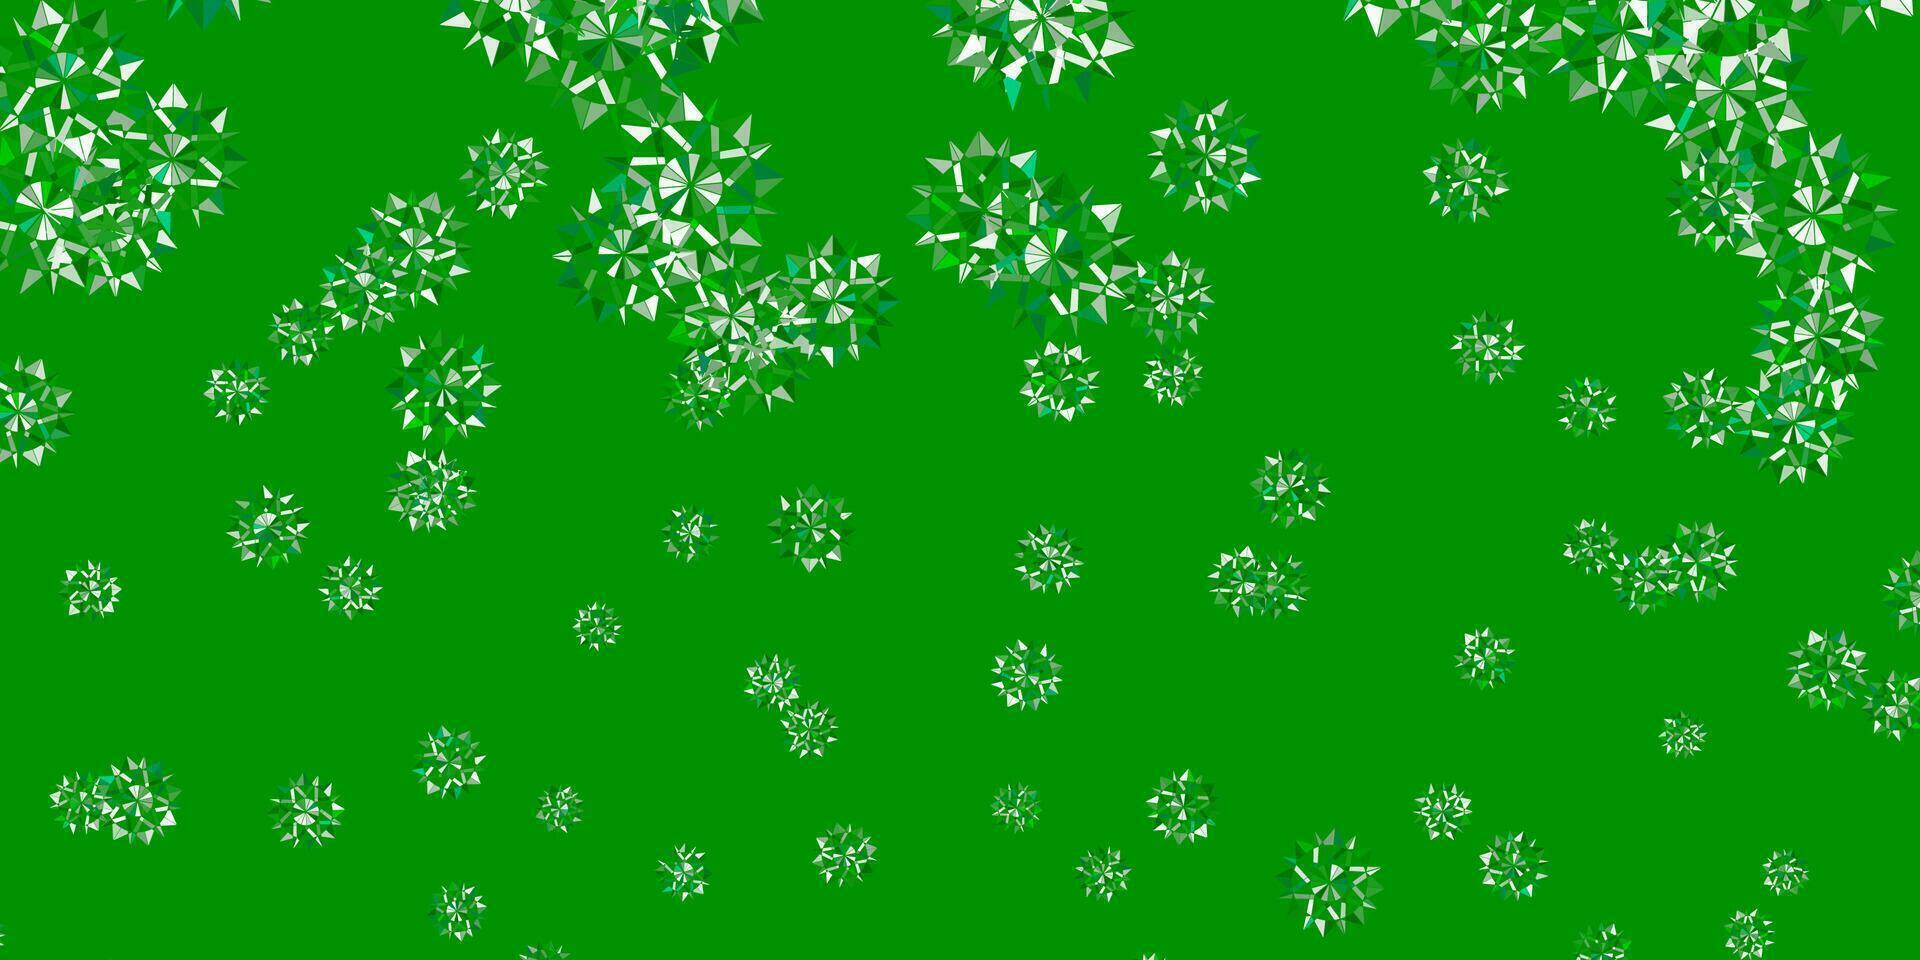 textura de vetor verde claro com flocos de neve brilhantes.